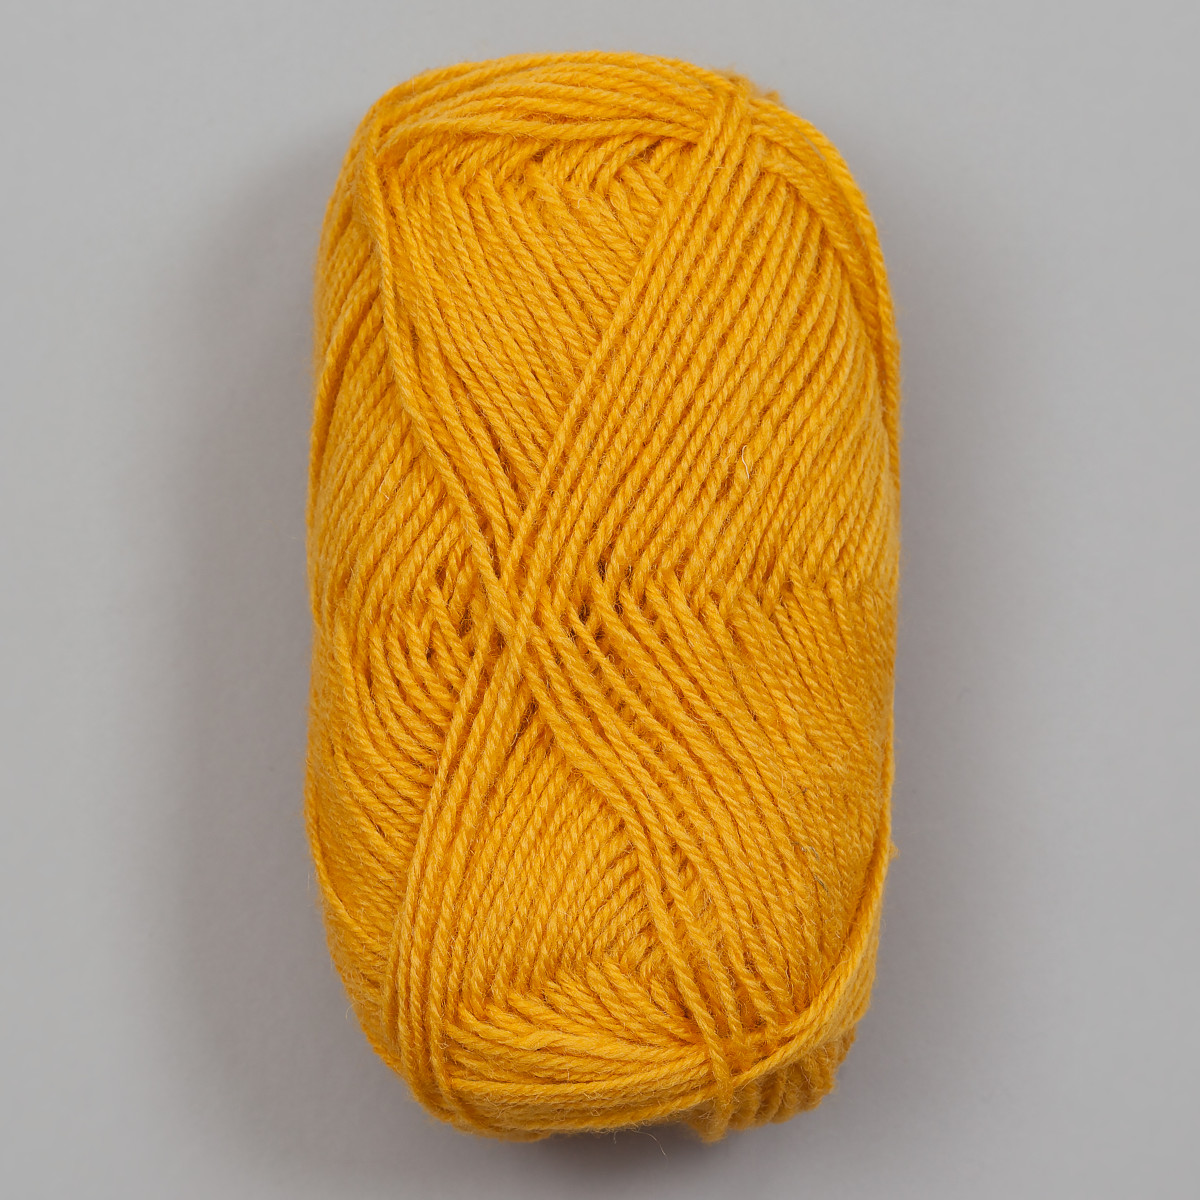 3-tråds strikkegarn - Mørk gul (131)